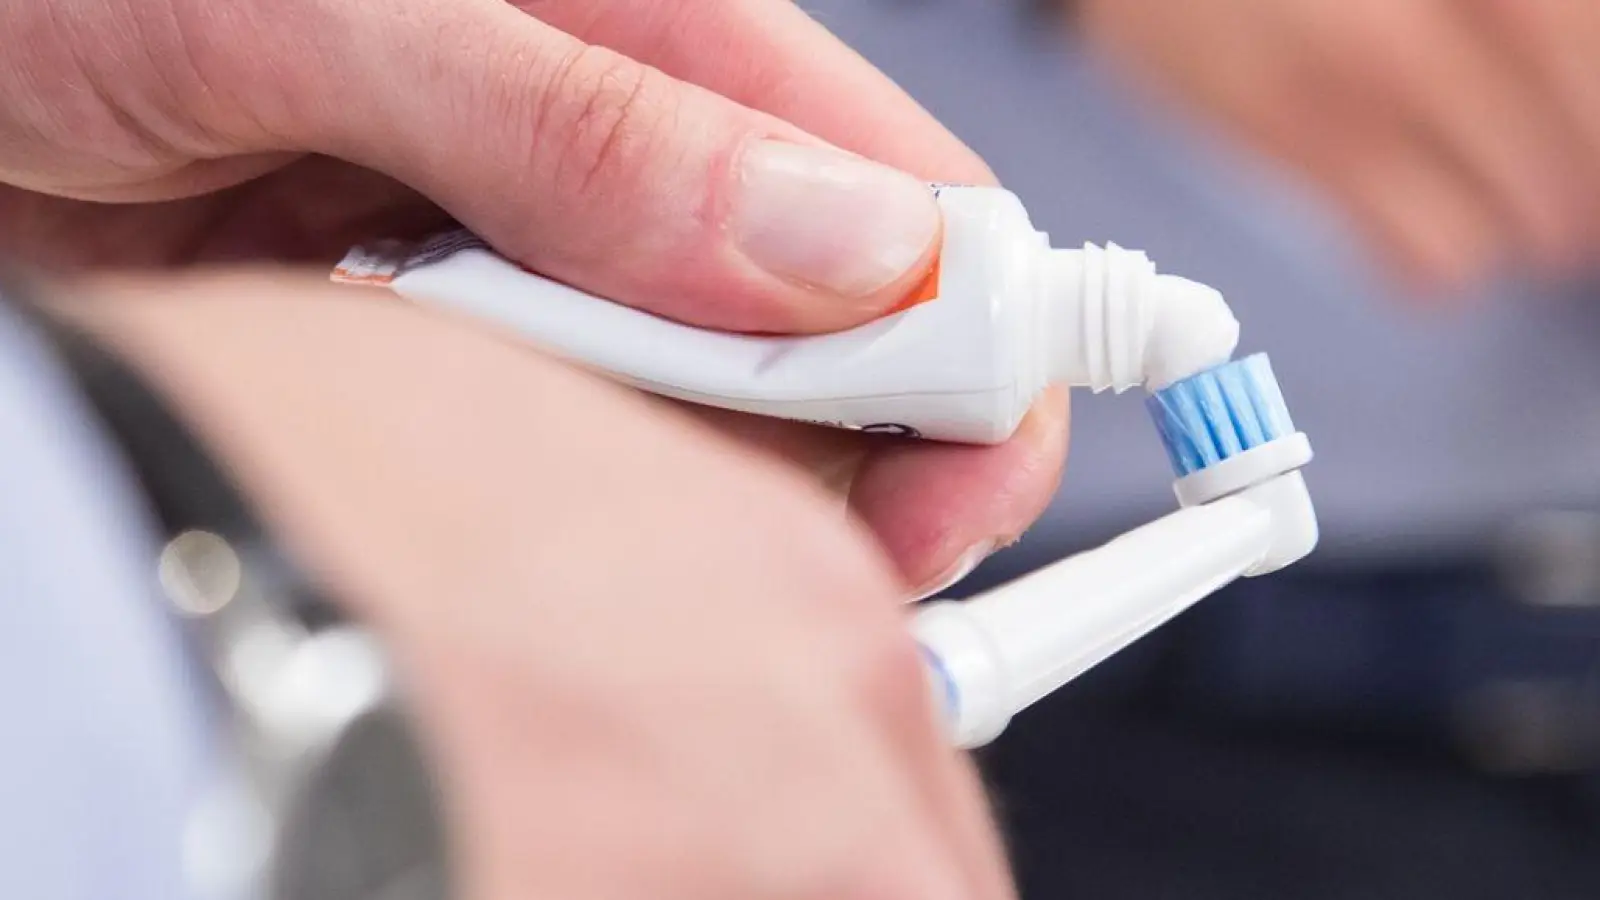 Wer eine elektrische Zahnbürste aus der Drogerie nutzt, muss auf Extras verzichten. Zum Beispiel auf Apps, mit denen sich das Zahnputzverhalten analysieren lässt. (Foto: Christin Klose/dpa-tmn)